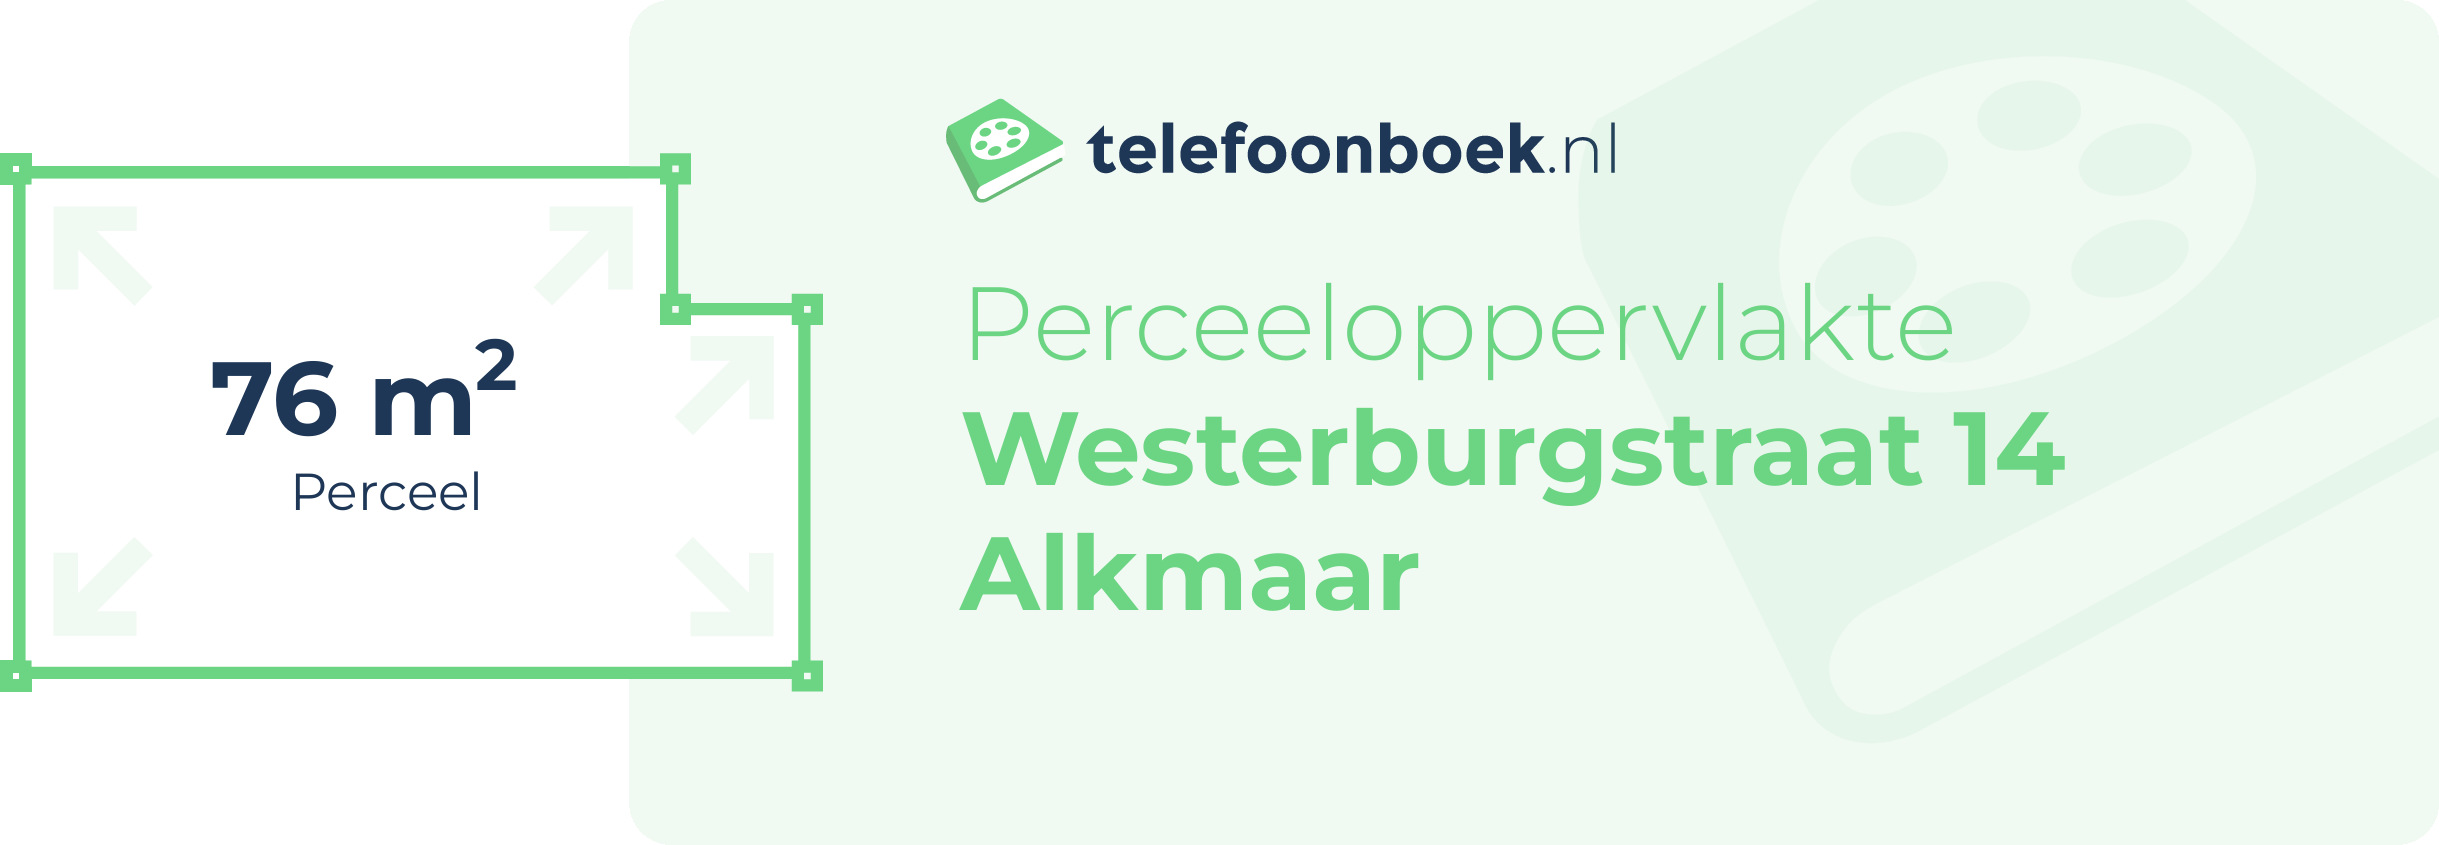 Perceeloppervlakte Westerburgstraat 14 Alkmaar